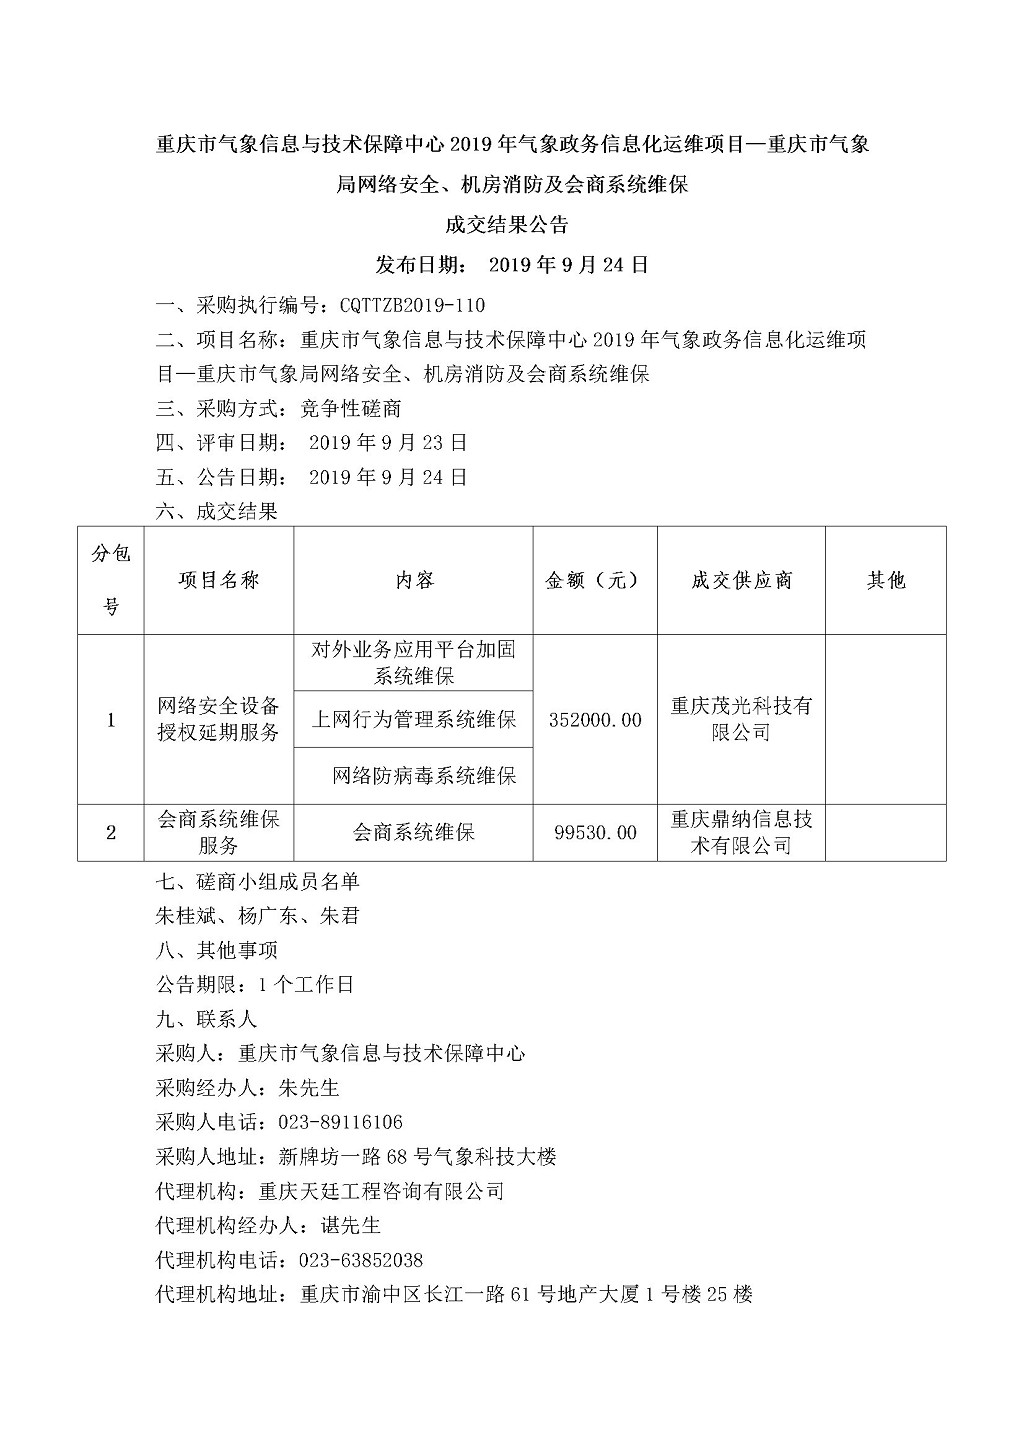 20190924重庆市气象信息与技术保障中心会商系统维保服务结果公告.jpg